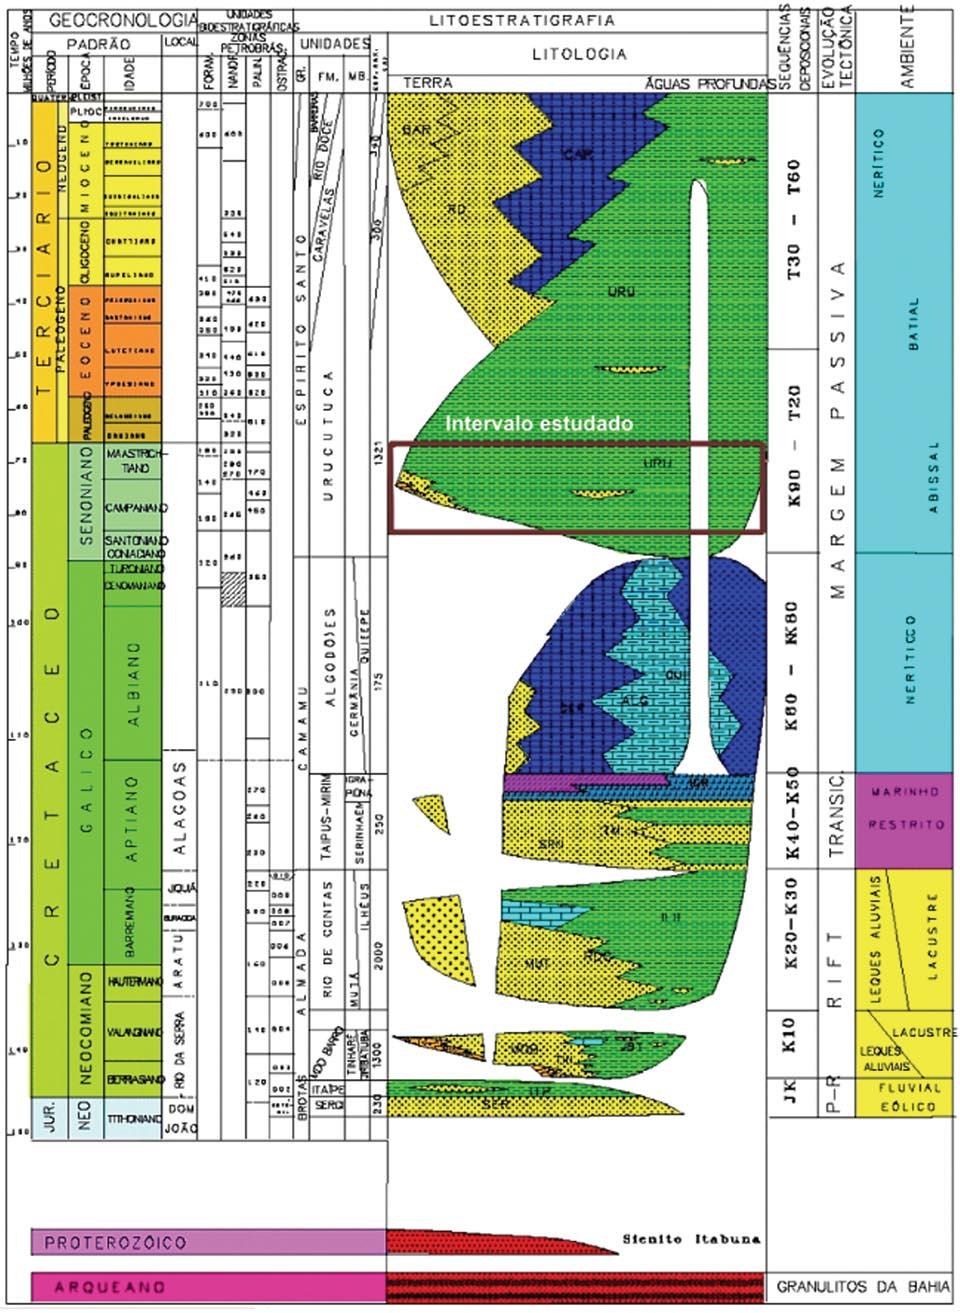 Figura 3 Carta estratigráfica da Bacia de Almada e o intervalo estudado, destacado pelo retângulo (modificada de Netto et al. 1994).